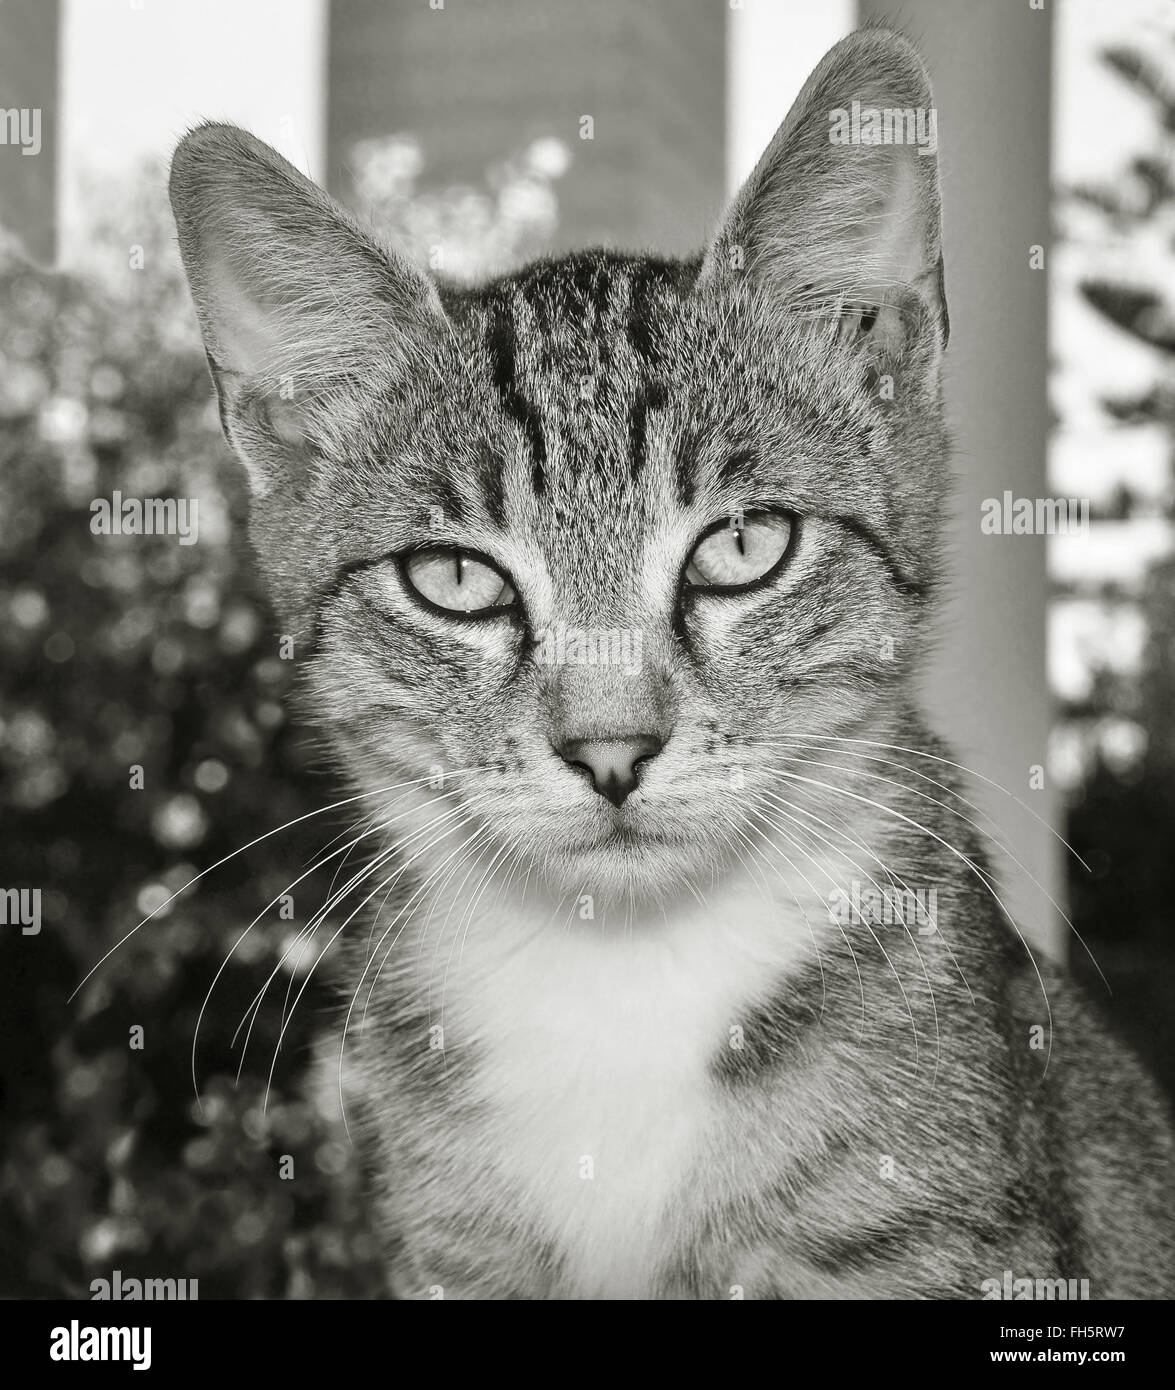 portrait of cat Stock Photo